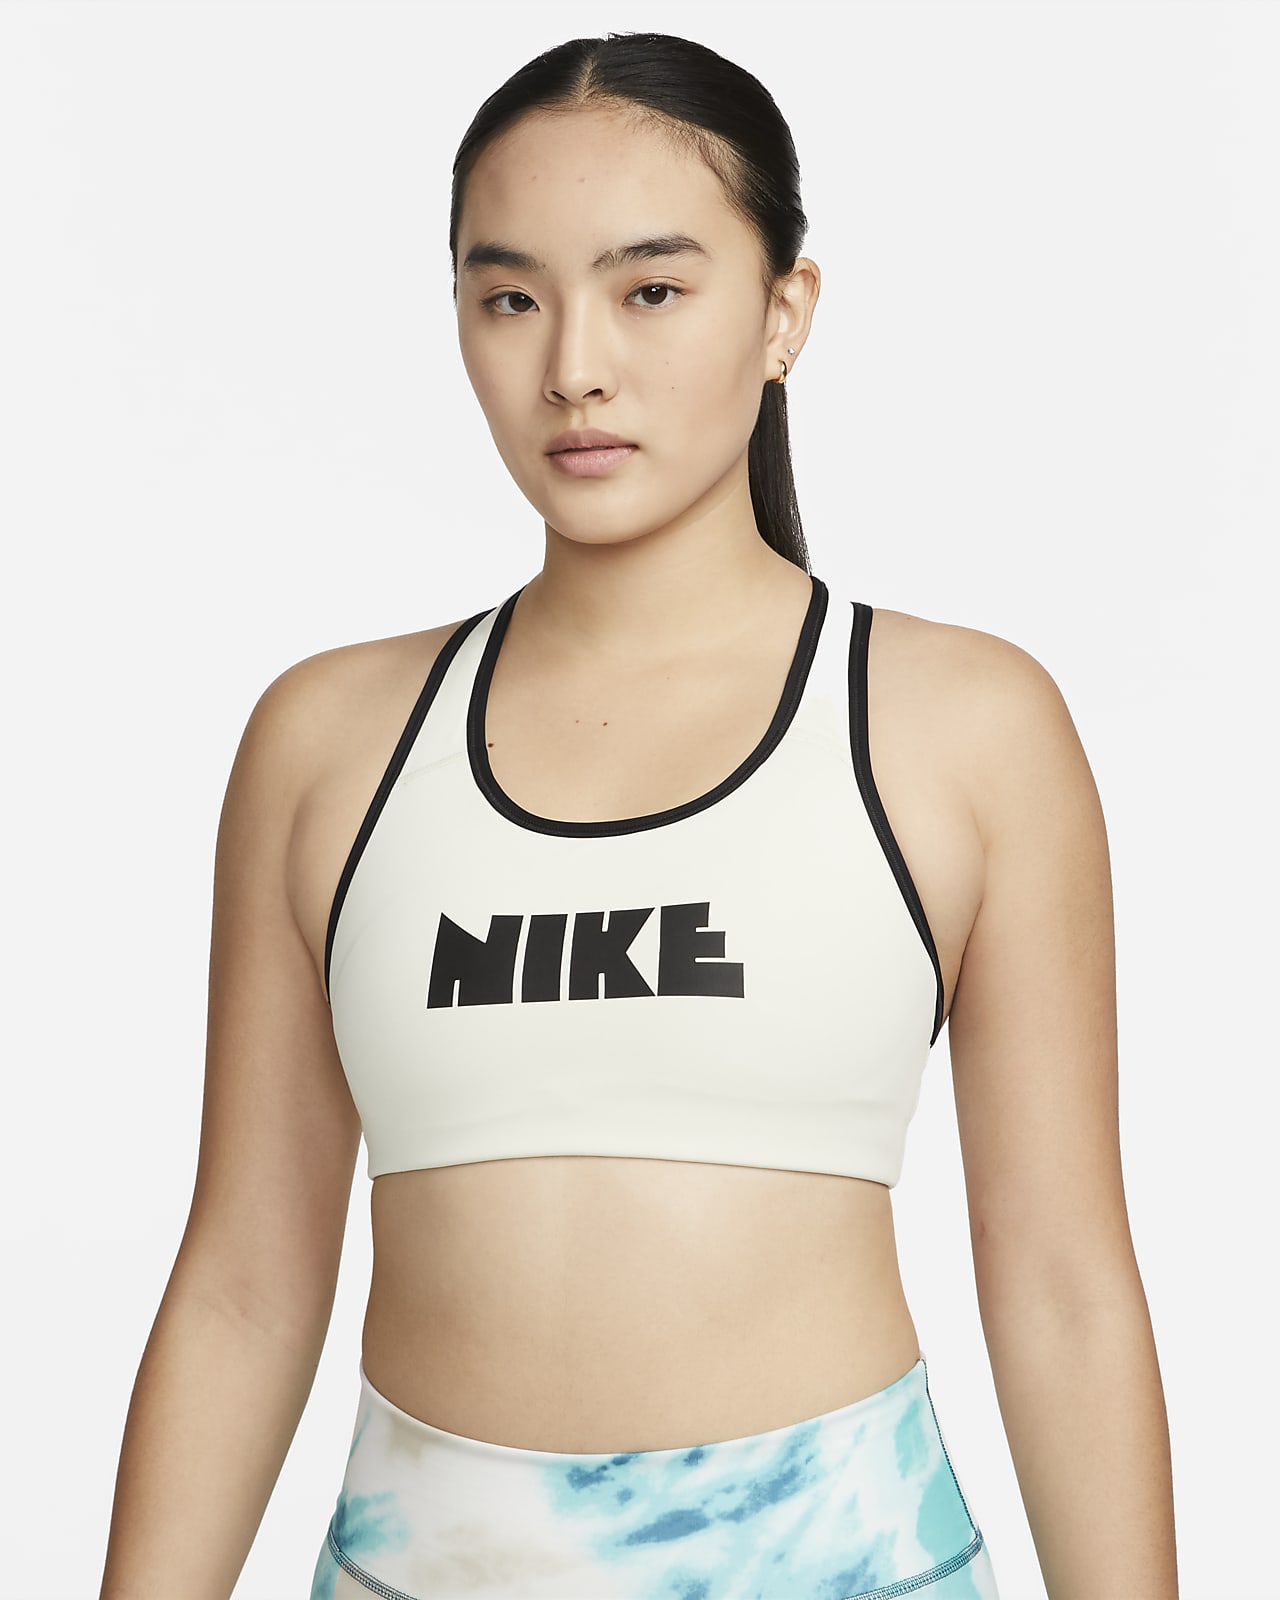 Nike Women's Classic Pro T-Back Sports Bra (Black/Large)